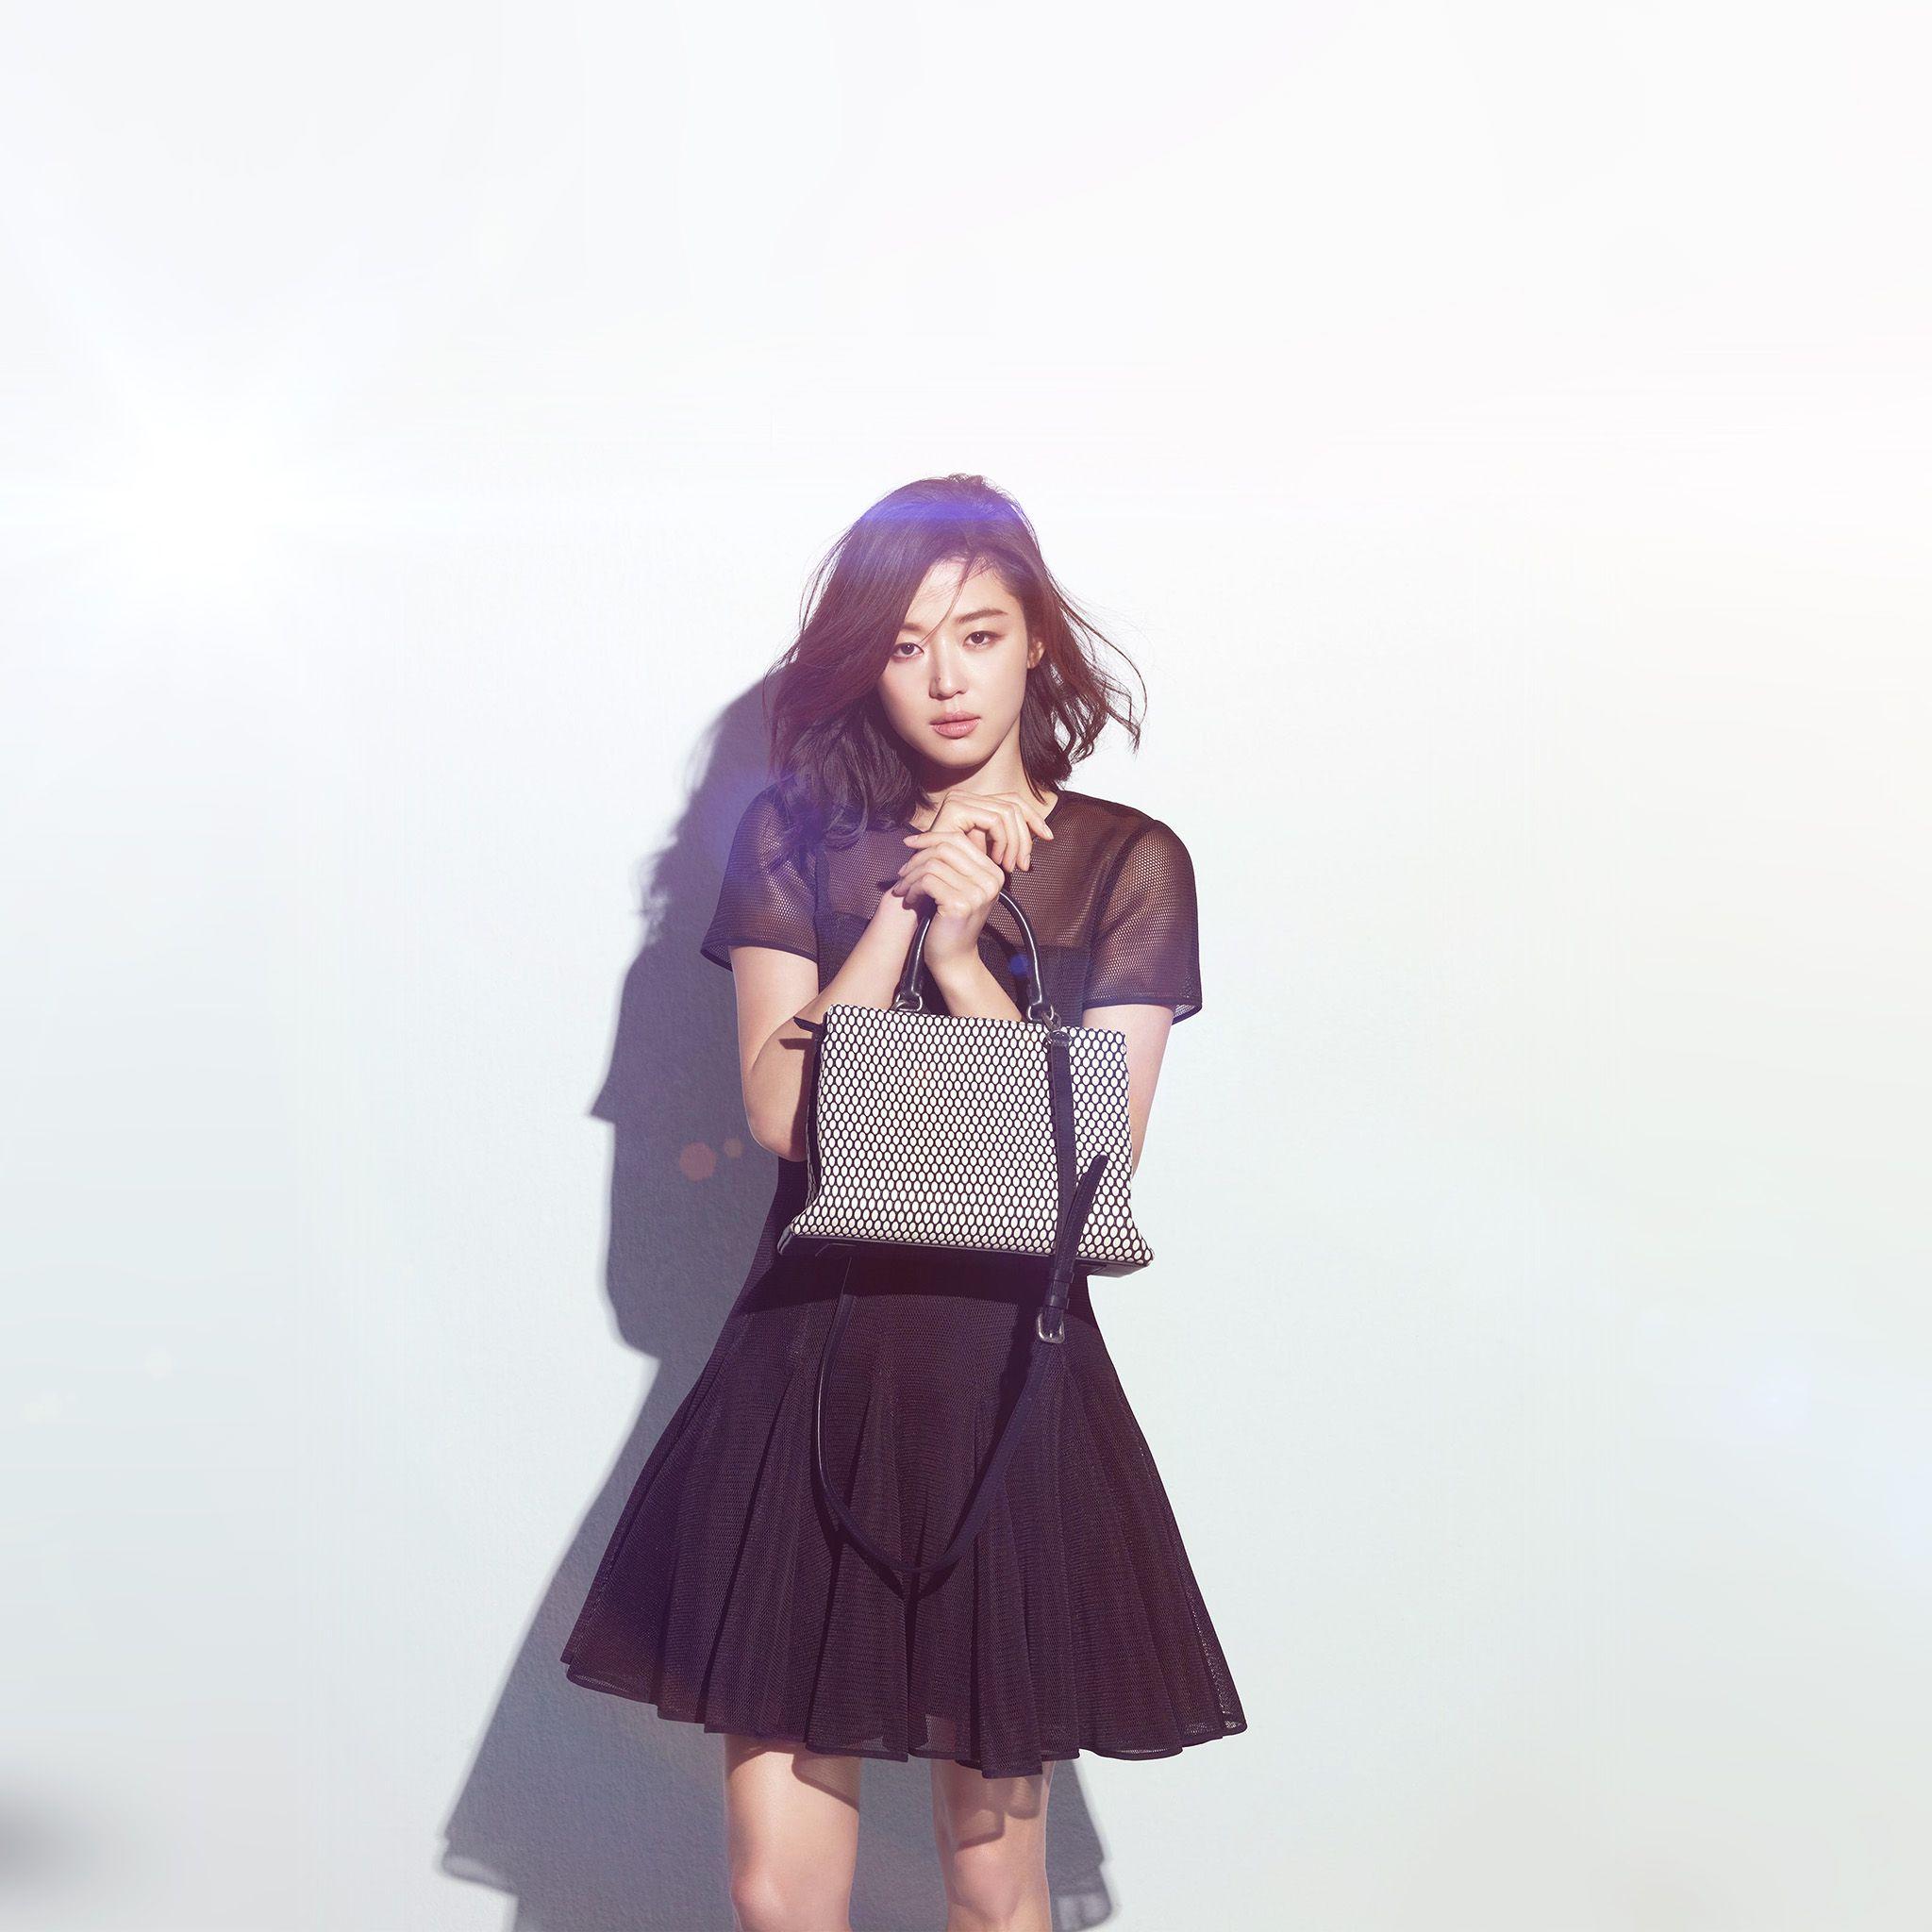 FreeiOS8.com. iPhone wallpaper. jun ji hyun actress kpop cute